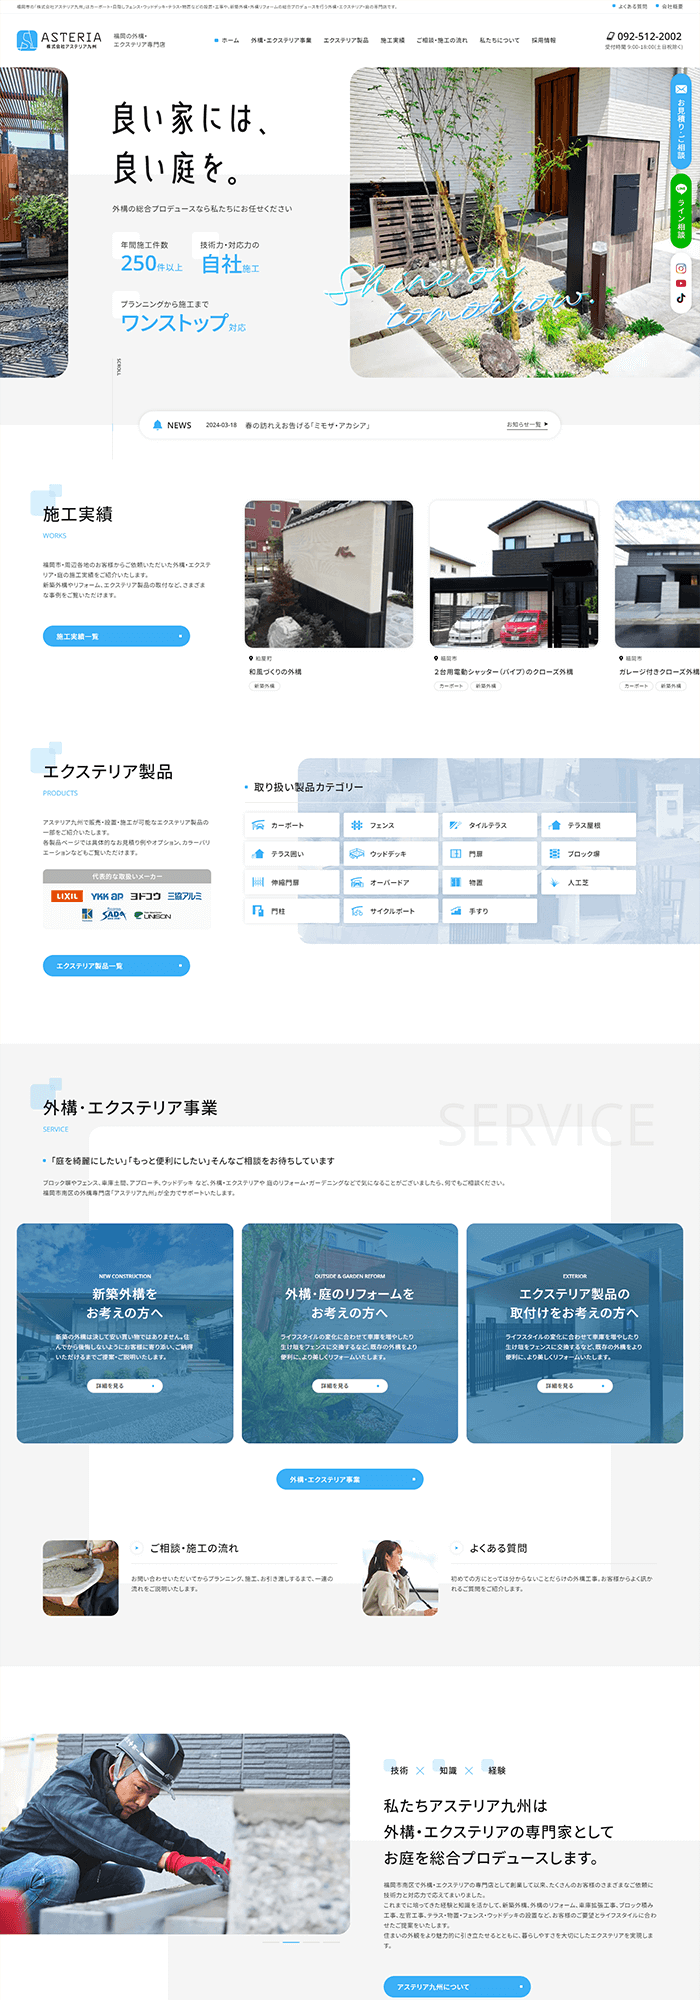 株式会社アステリア九州様 ホームページ制作実績 デスクトップイメージ